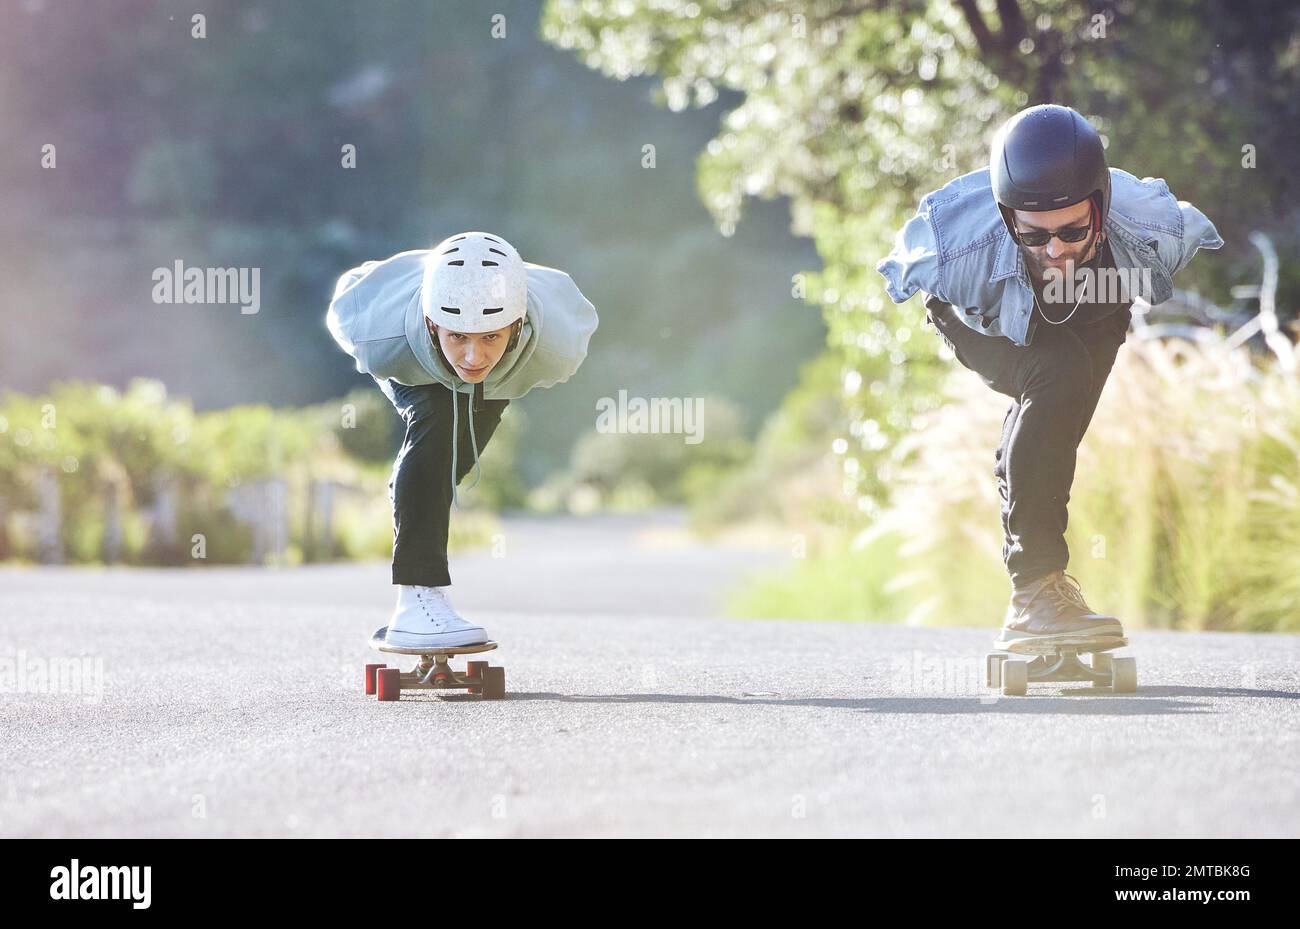 Amis, vitesse et patinage de longue durée sur route, course en descente avec skateboard et casque pour la sécurité. Aventure sportive extrême, skate Street Banque D'Images